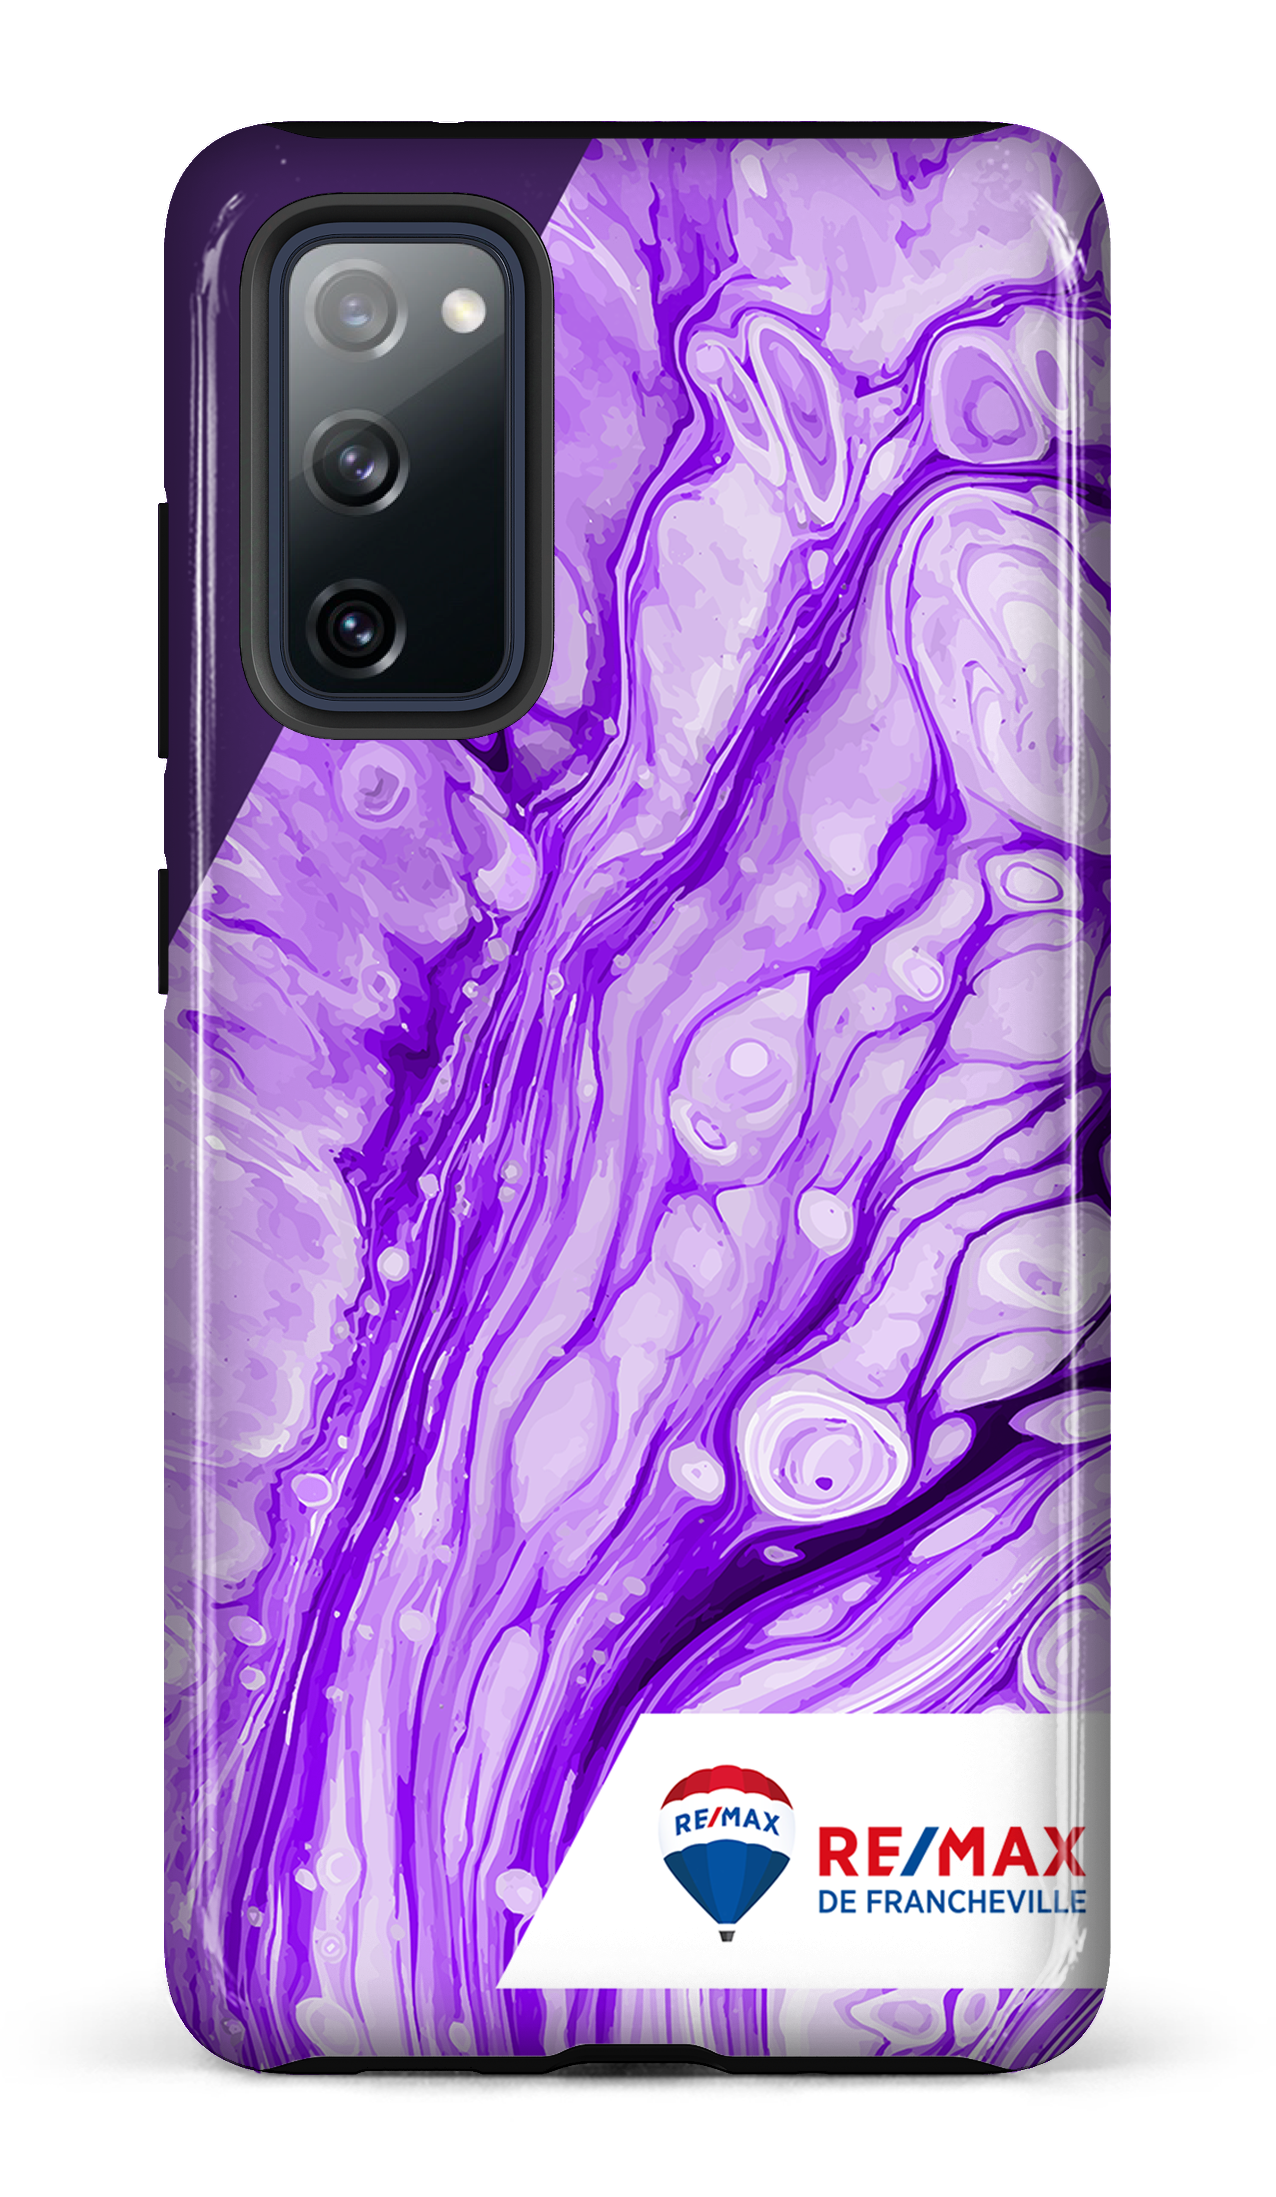 Peinture marbrée claire violette de Francheville - Galaxy S20 FE